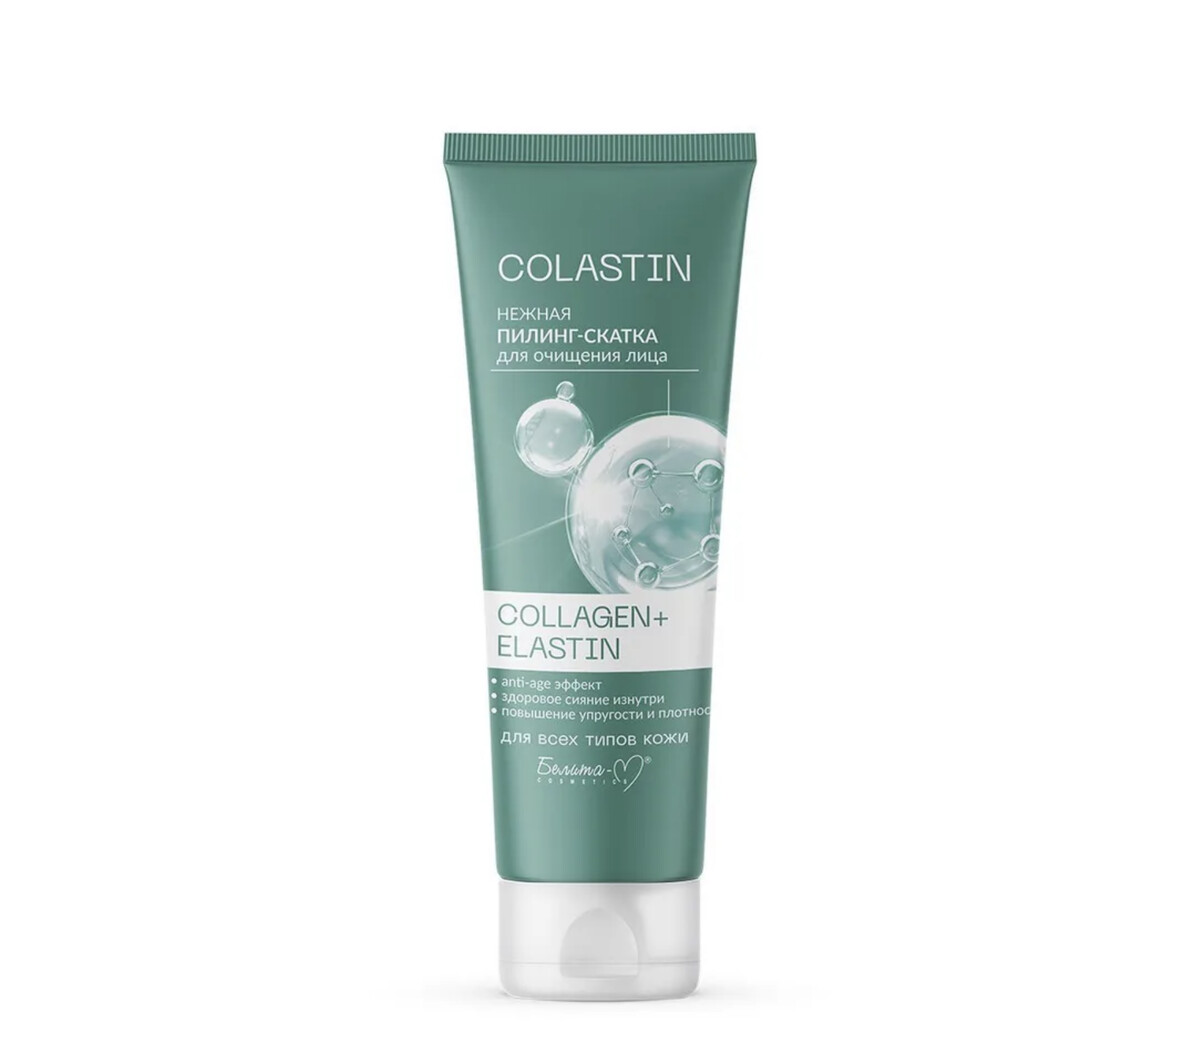 Colastin пилинг-скатка для очищения лица нежная collagen+elastin 75г